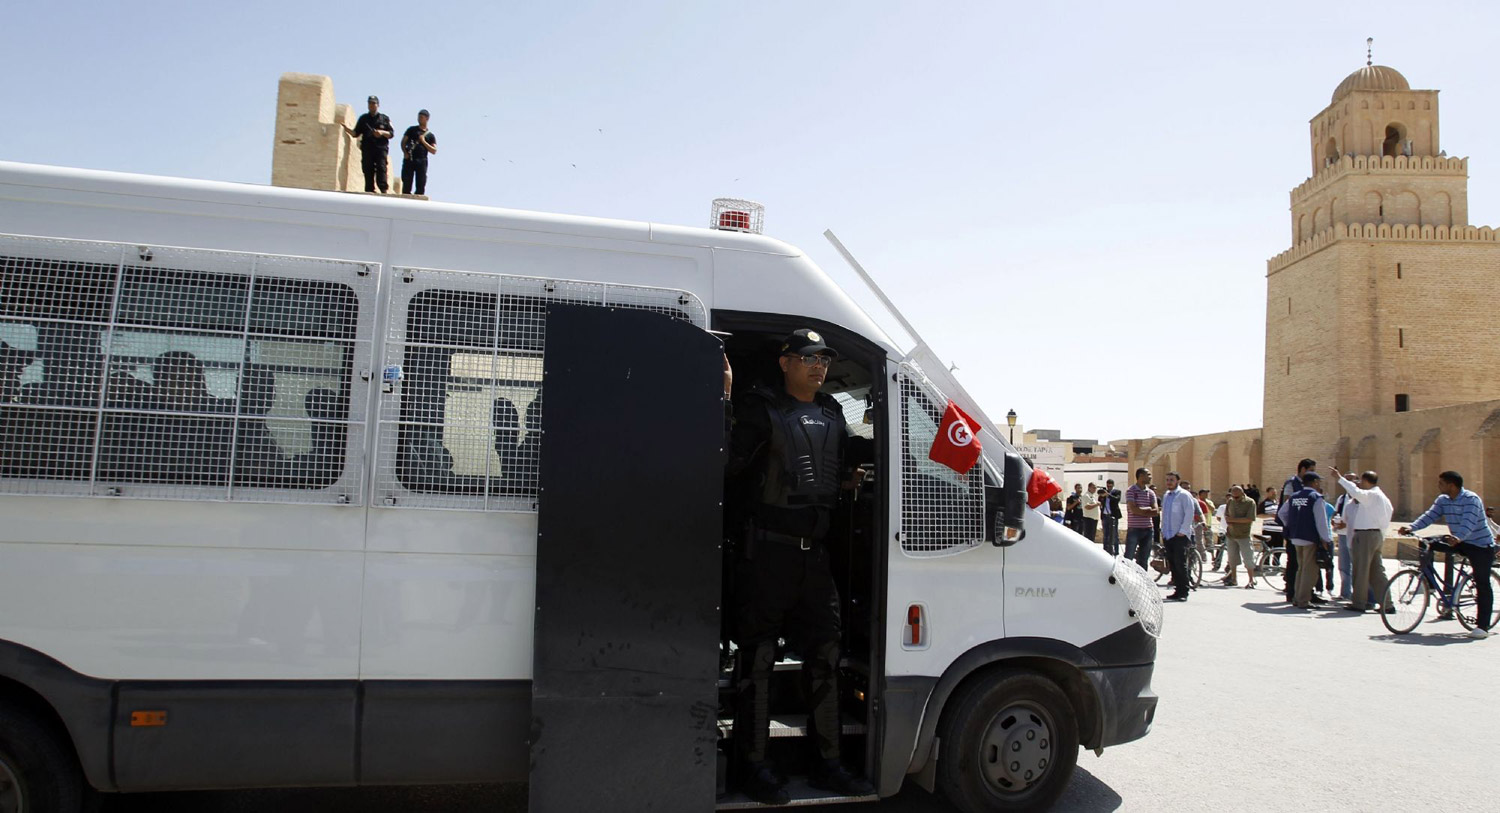 السلطات قامت بتوقيف مزودي الحكول المغشوش بمنطقة حاجب العيون في القيروان